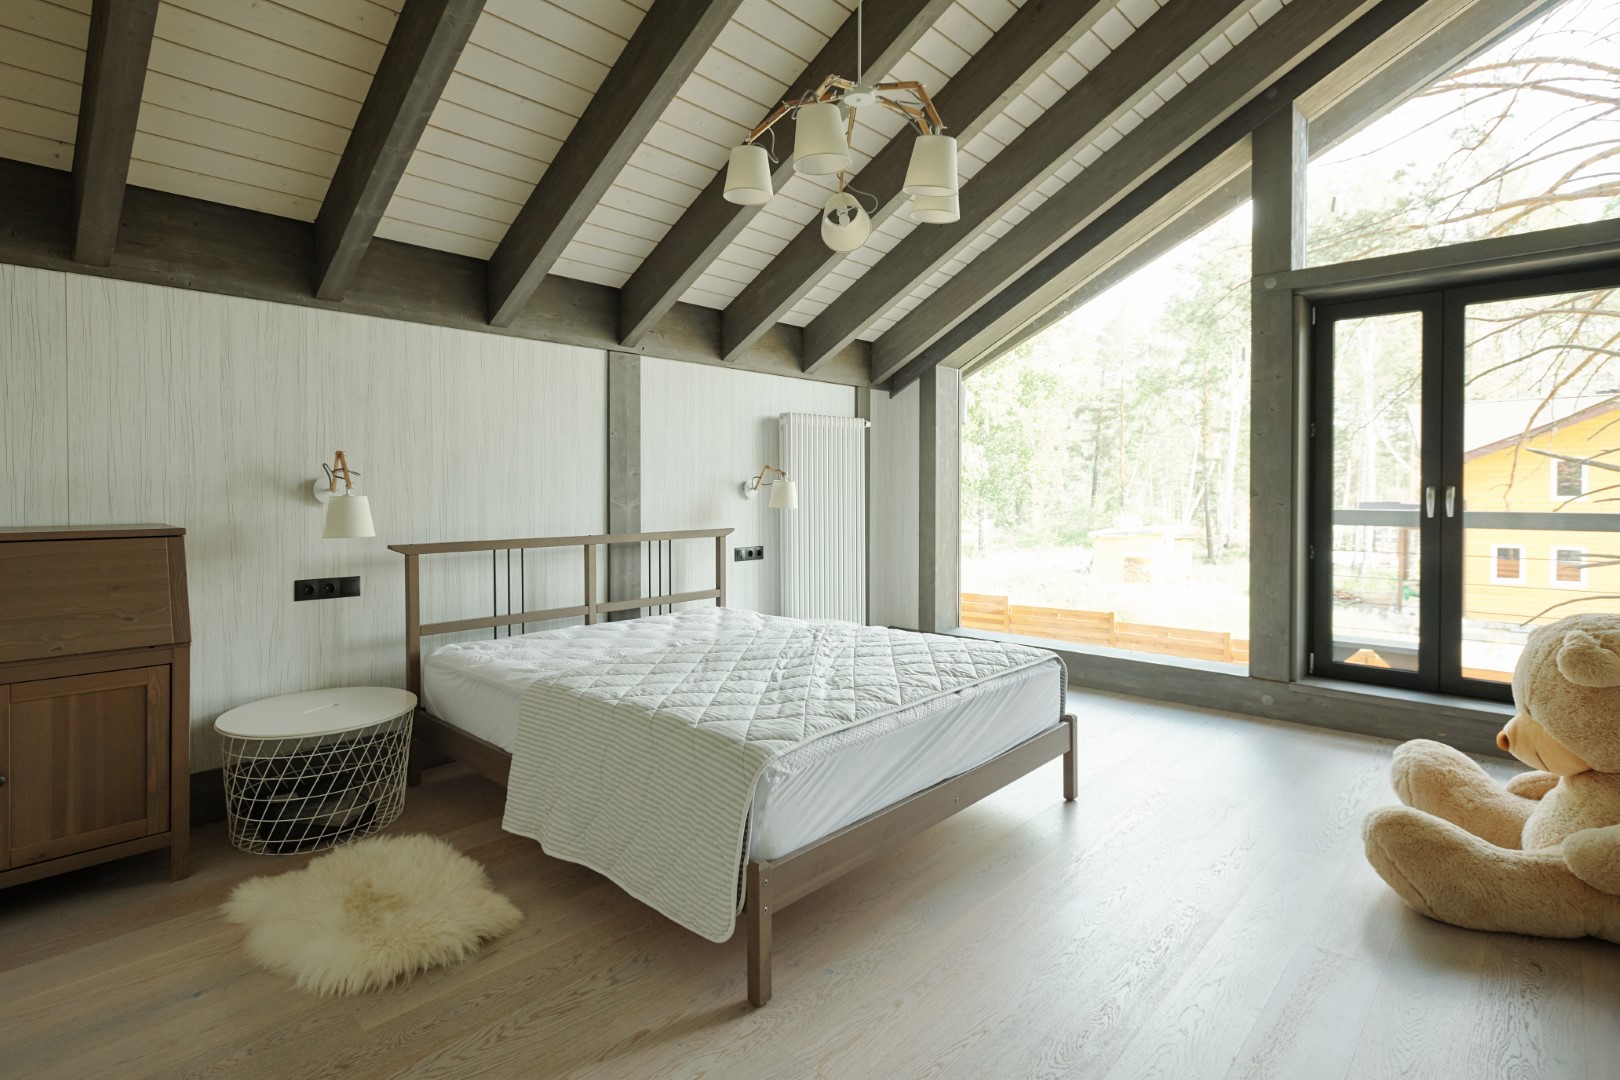 Cozy Bedroom In Cottage House 2023 11 27 05 37 17 Utc